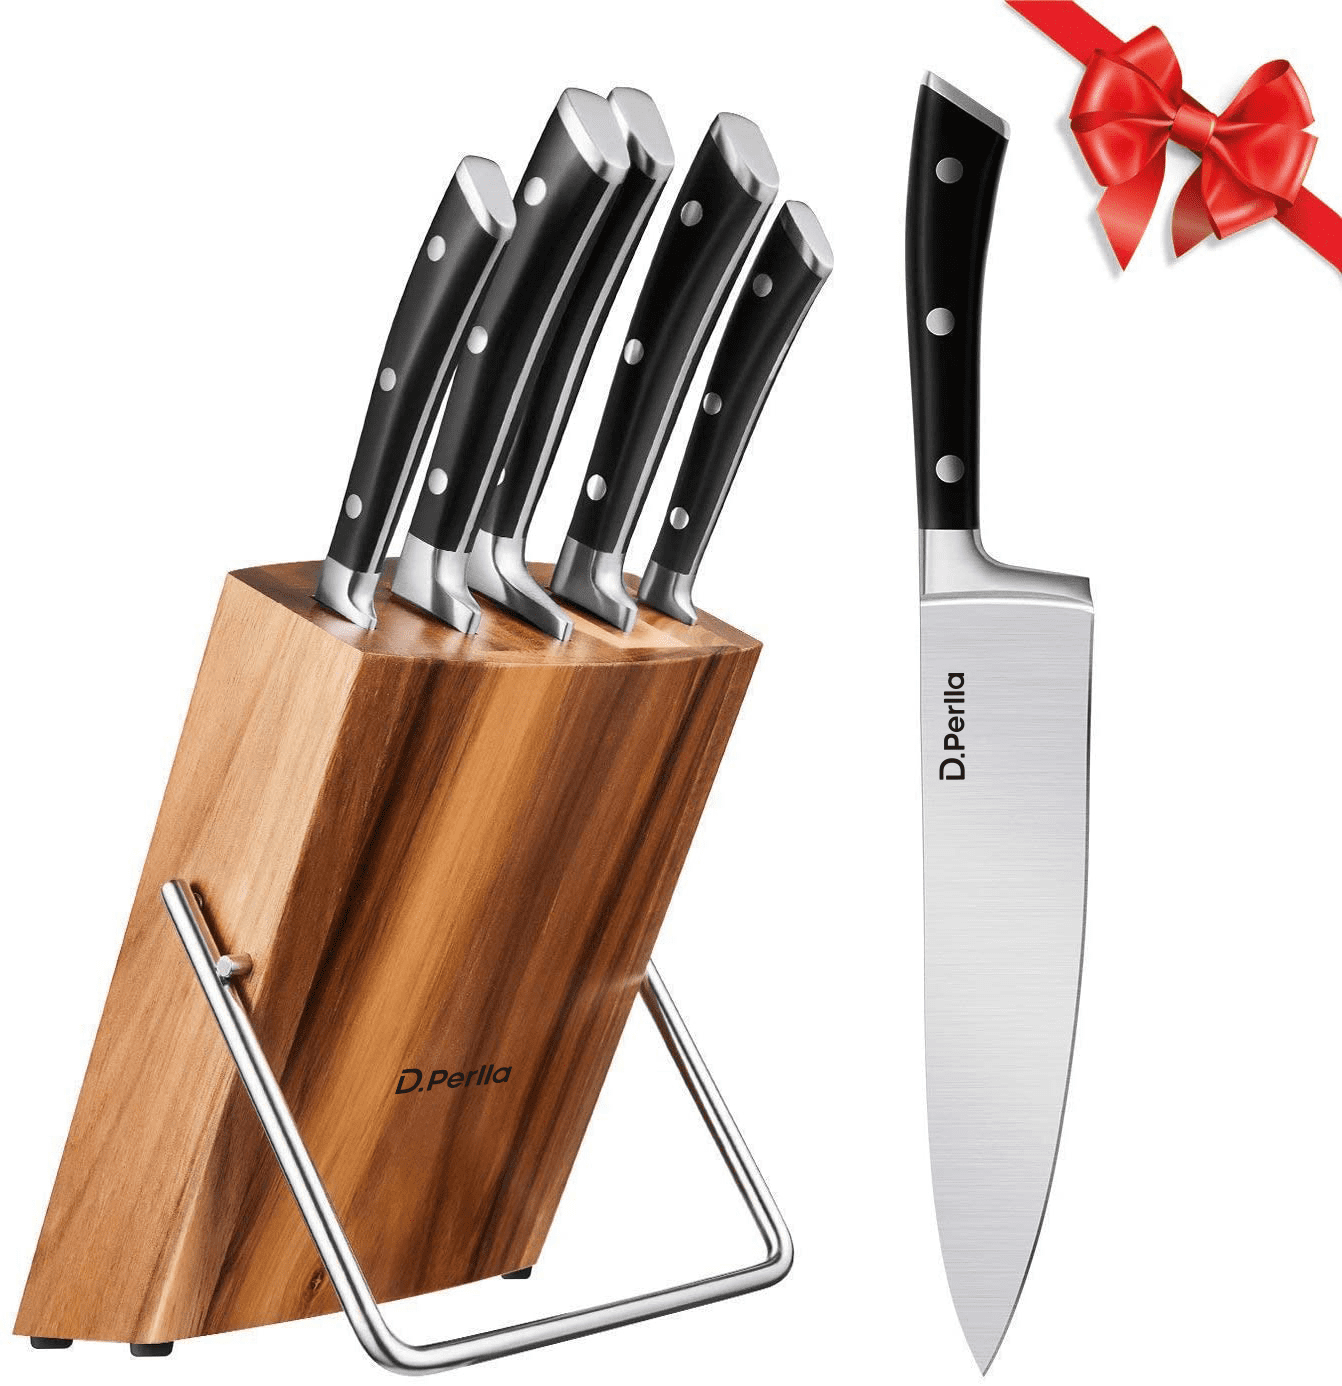  Kitchen Knife Set Knife Block Set，4CR13 Steel,Wood grain Set of  6, Sharpening Stick, Chopper, Slicers,Chef's knife, Fruit knife,Ergonomic  Handle for Chef Knife Extremely Sharp Blades.: Home & Kitchen